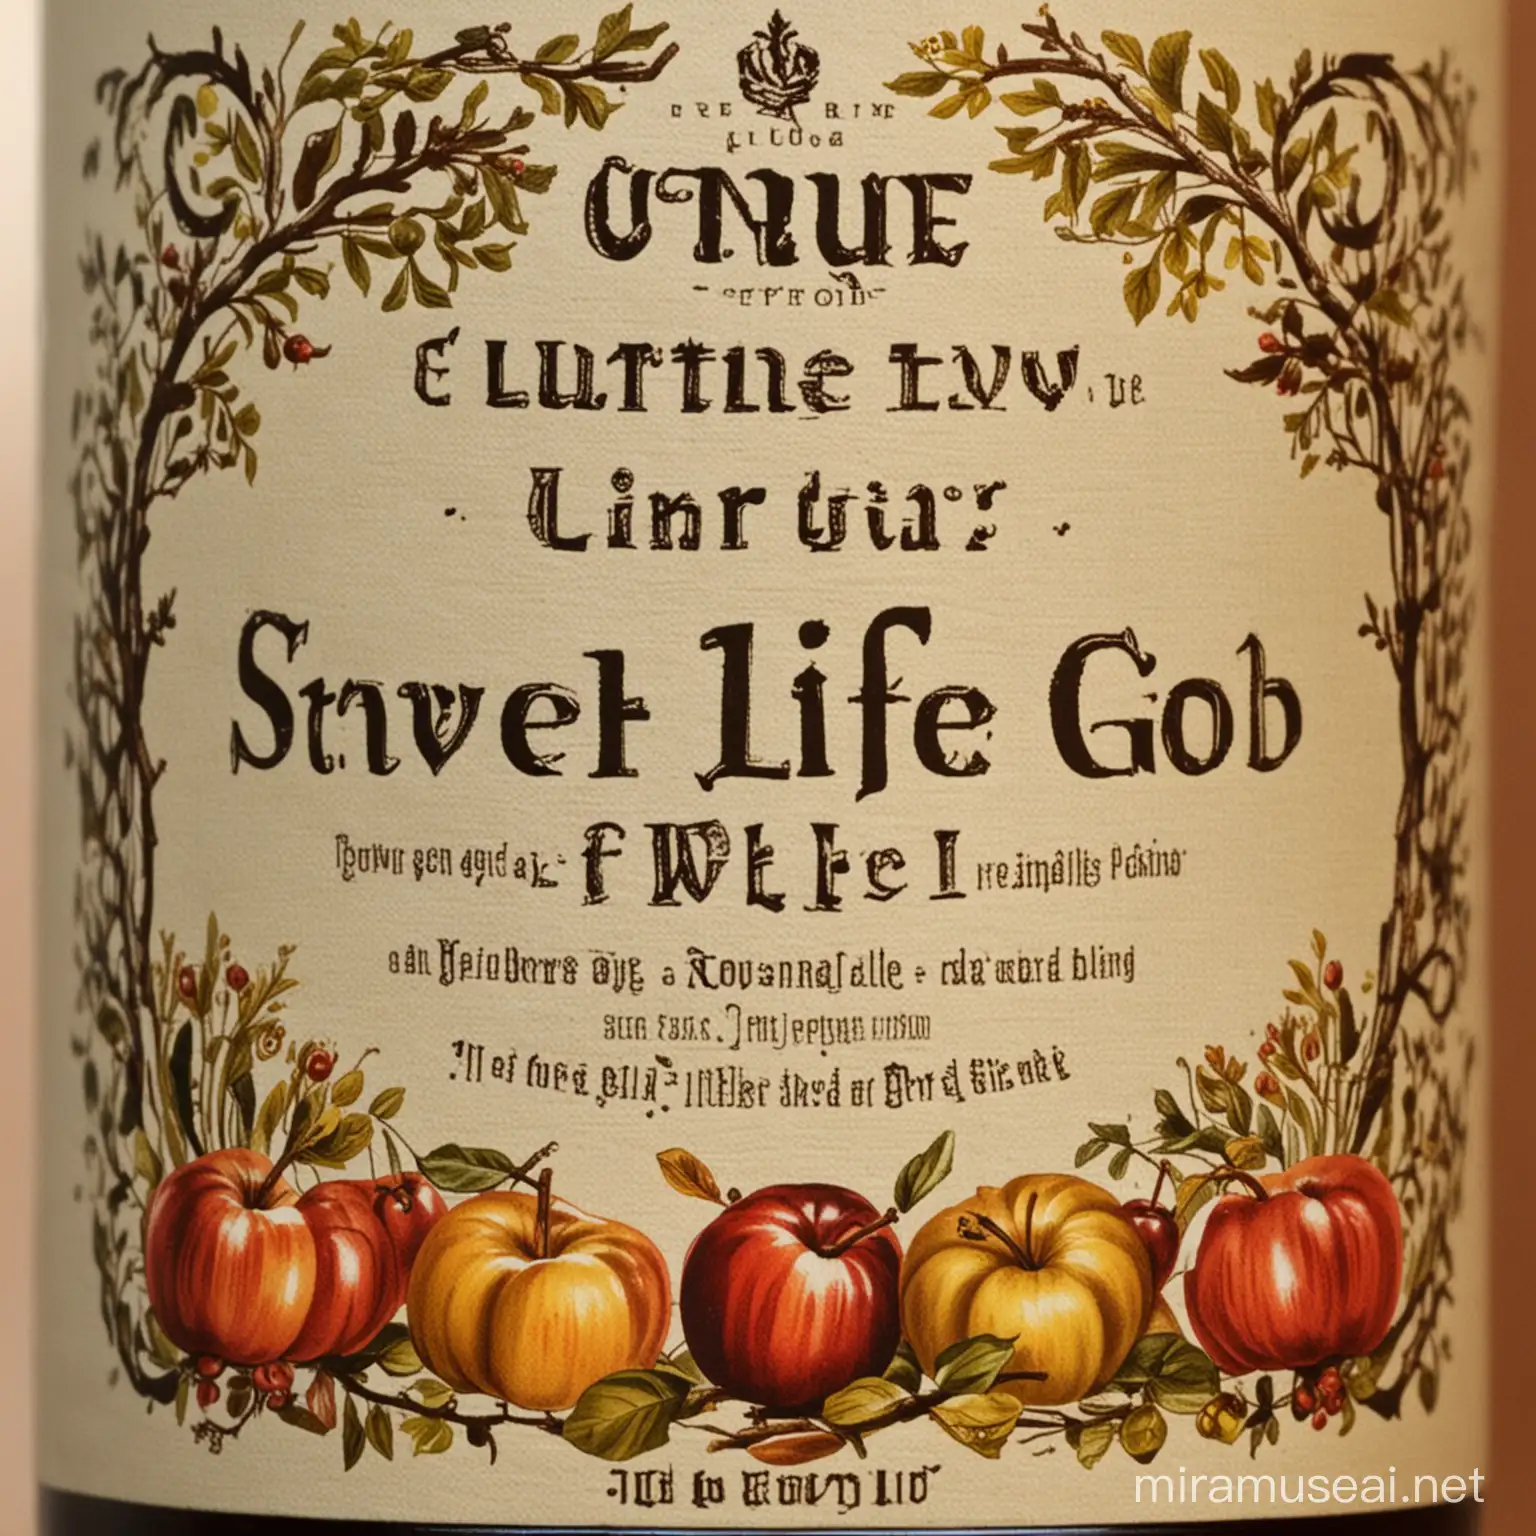 True Life in God Cider Bottle Label Design for Christian Unity